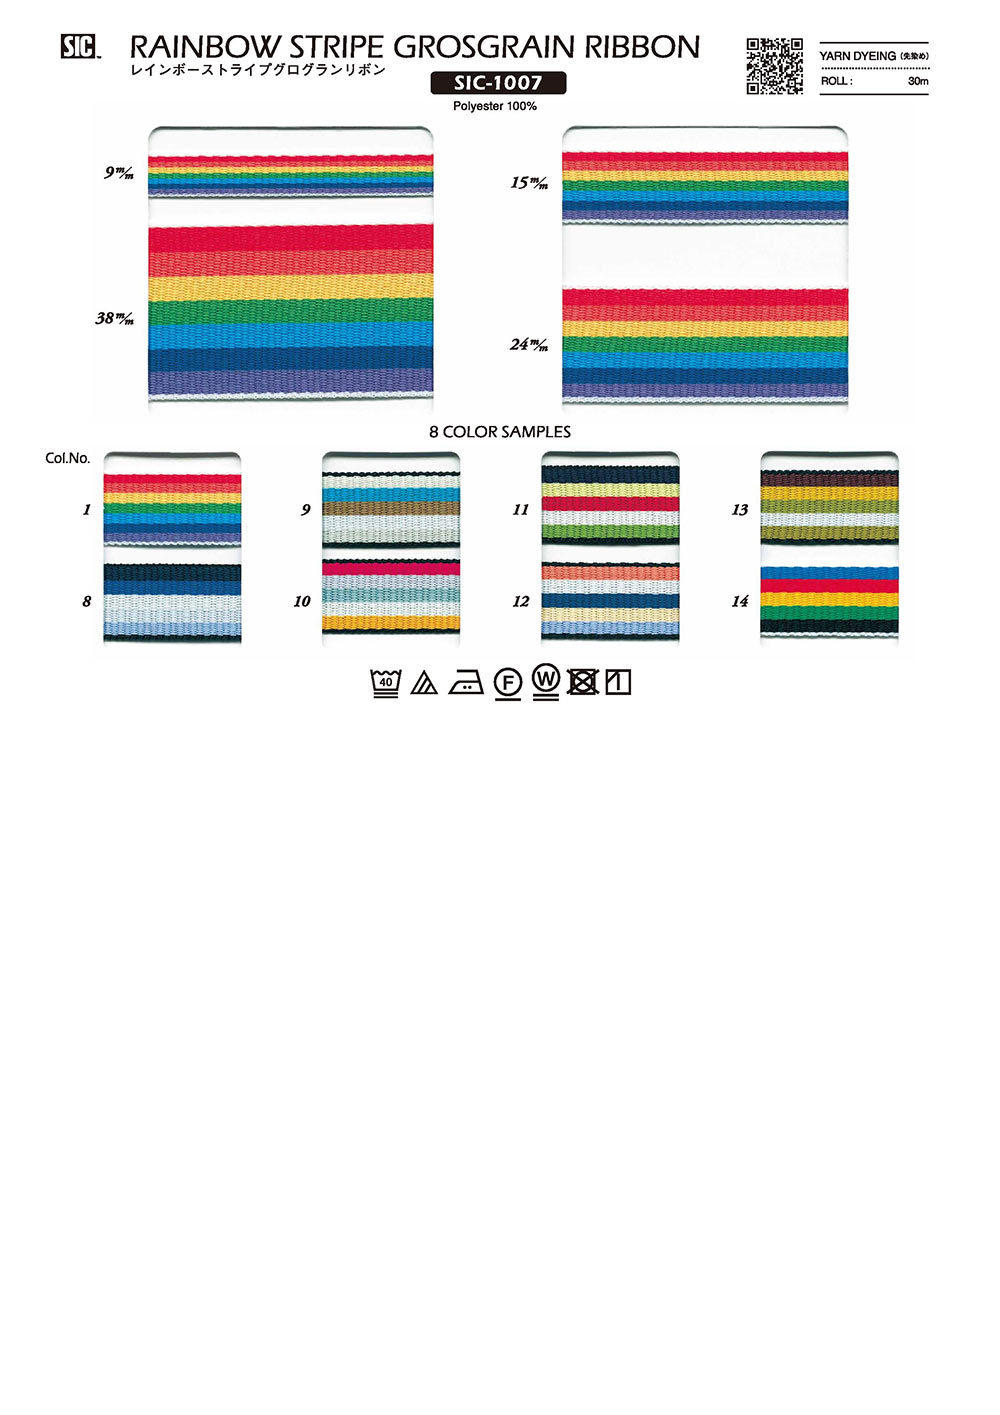 SIC-1007 彩虹條紋羅緞緞帶[緞帶/絲帶帶繩子] 新道良質(SIC)